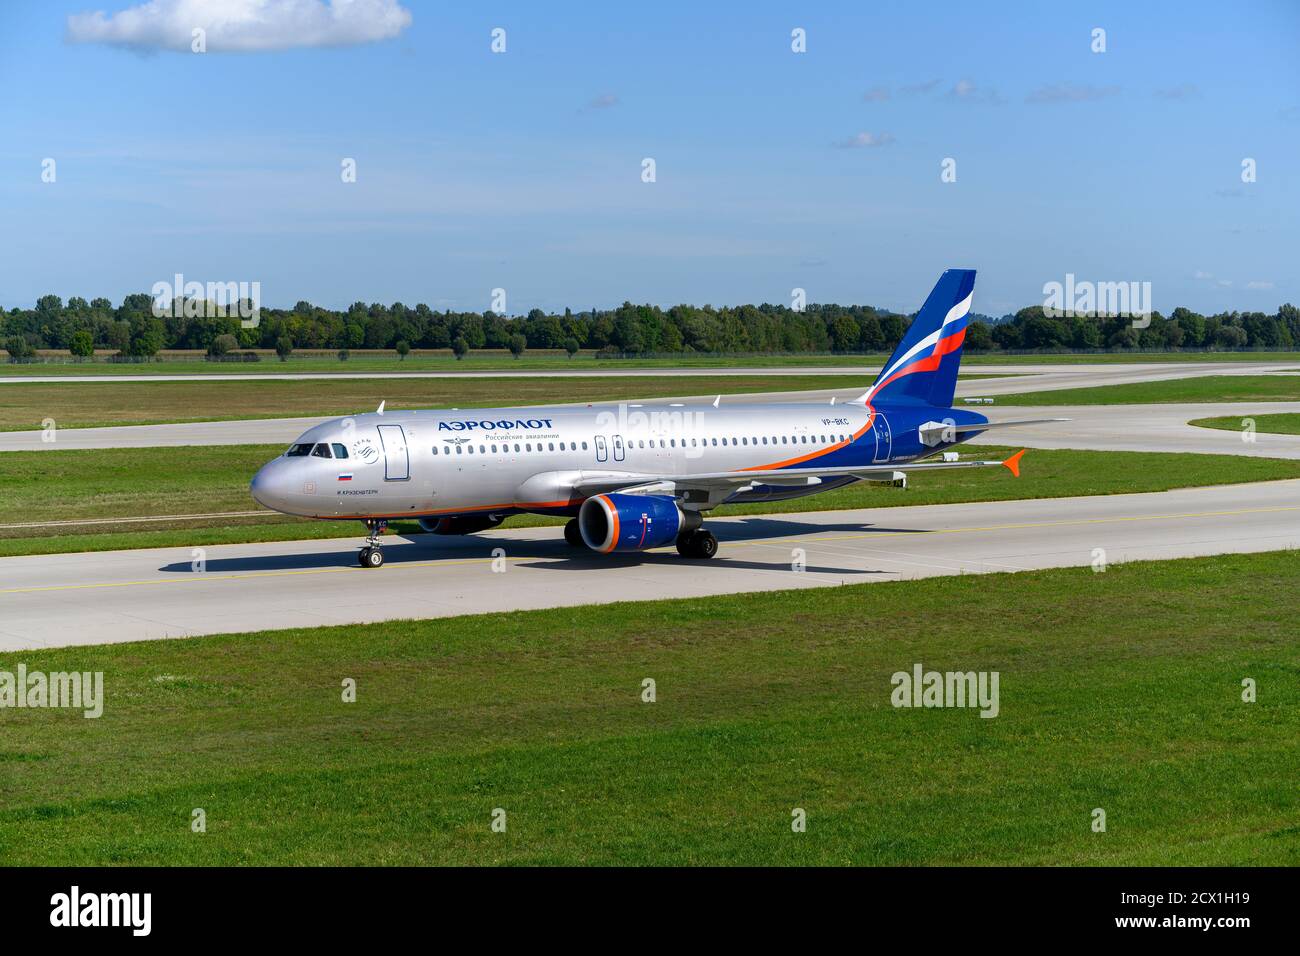 Munich, Allemagne - septembre 19. 2019 : Aeroflot - Russian Airlines Airbus A320-214 avec l'immatriculation de l'avion VP-BKC est en train de rouler pour le décollage Banque D'Images